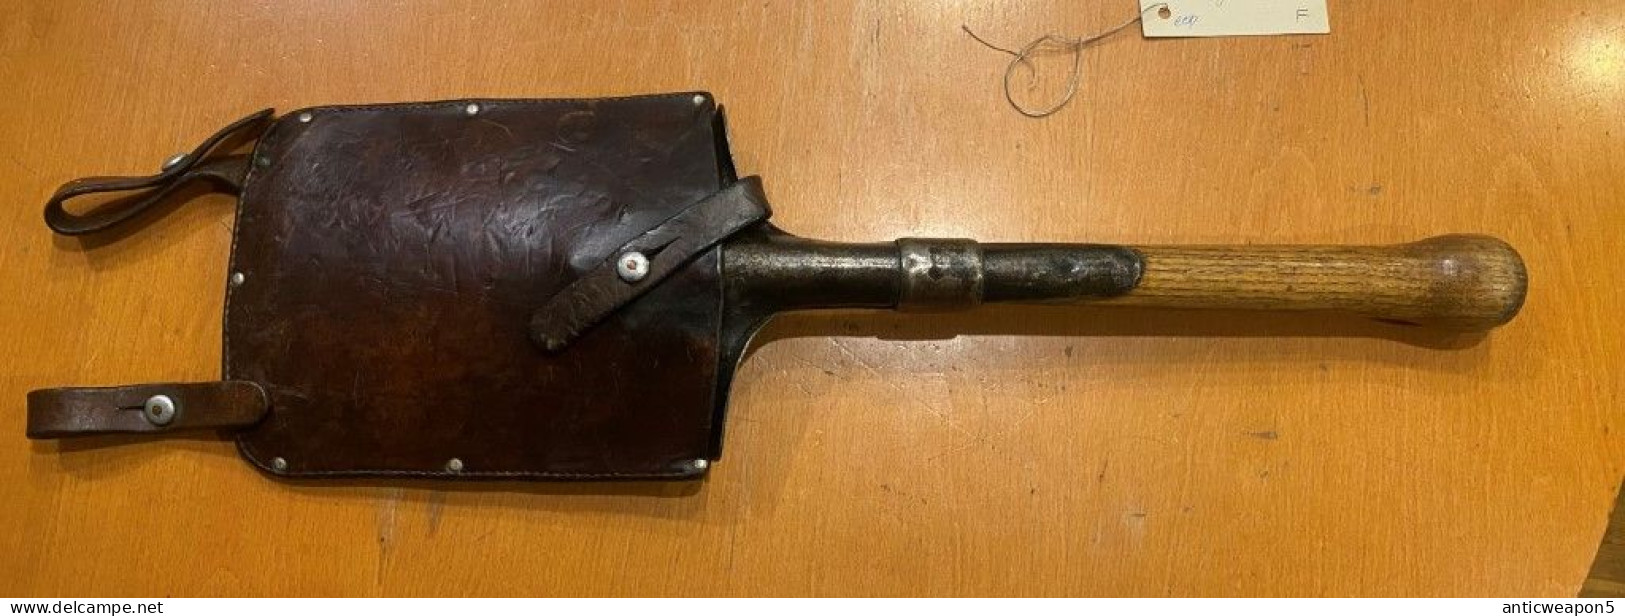 Pelle De Sapeur. Suisse (H226). M1910 - Knives/Swords